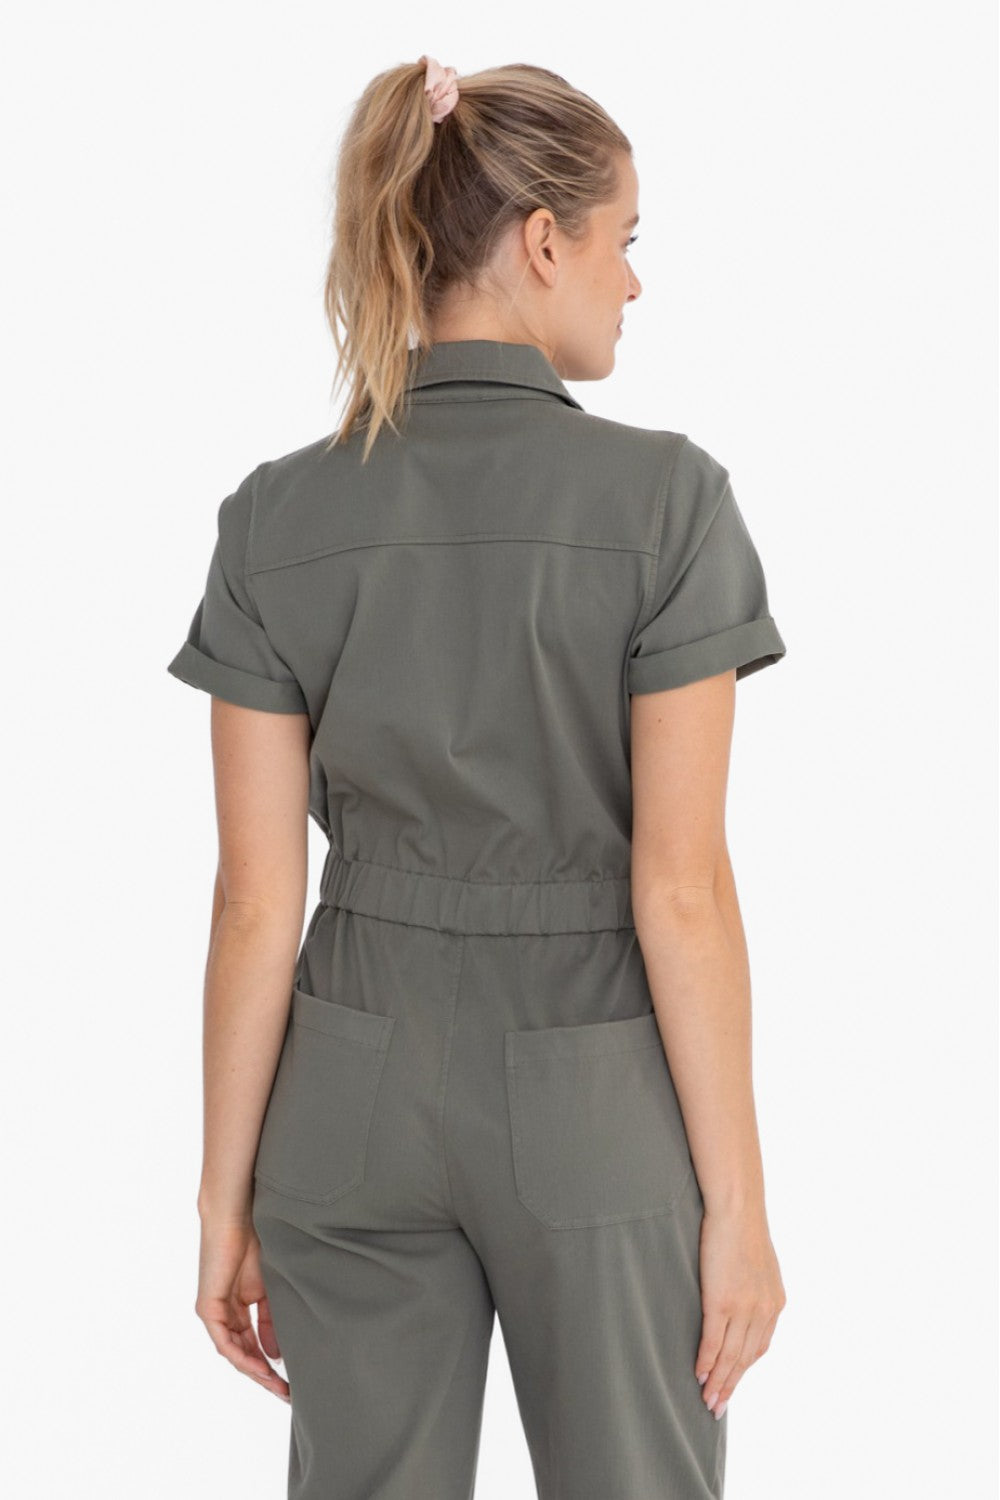 Short Sleeve Utility Style Jumpsuit | Olive